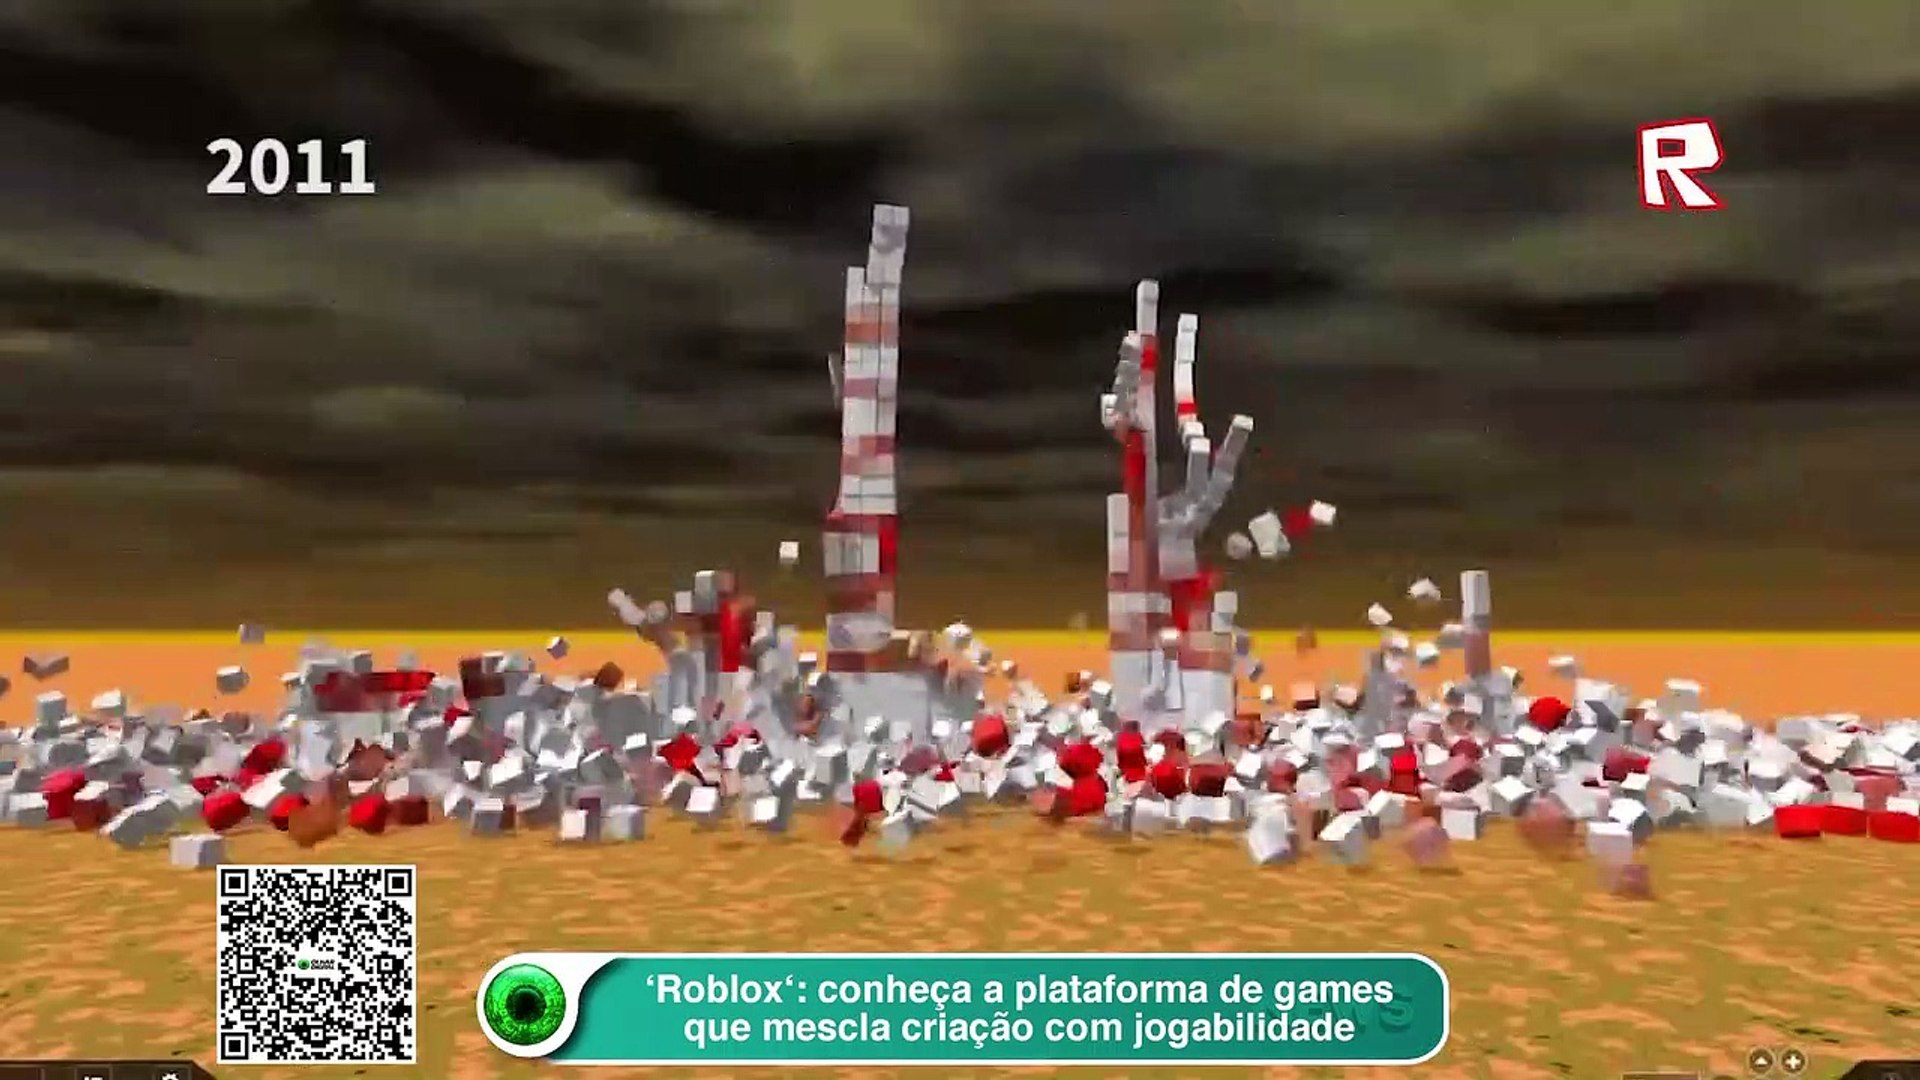 Roblox'- conheça a plataforma de games que mescla criação com jogabilidade  - Vídeo Dailymotion